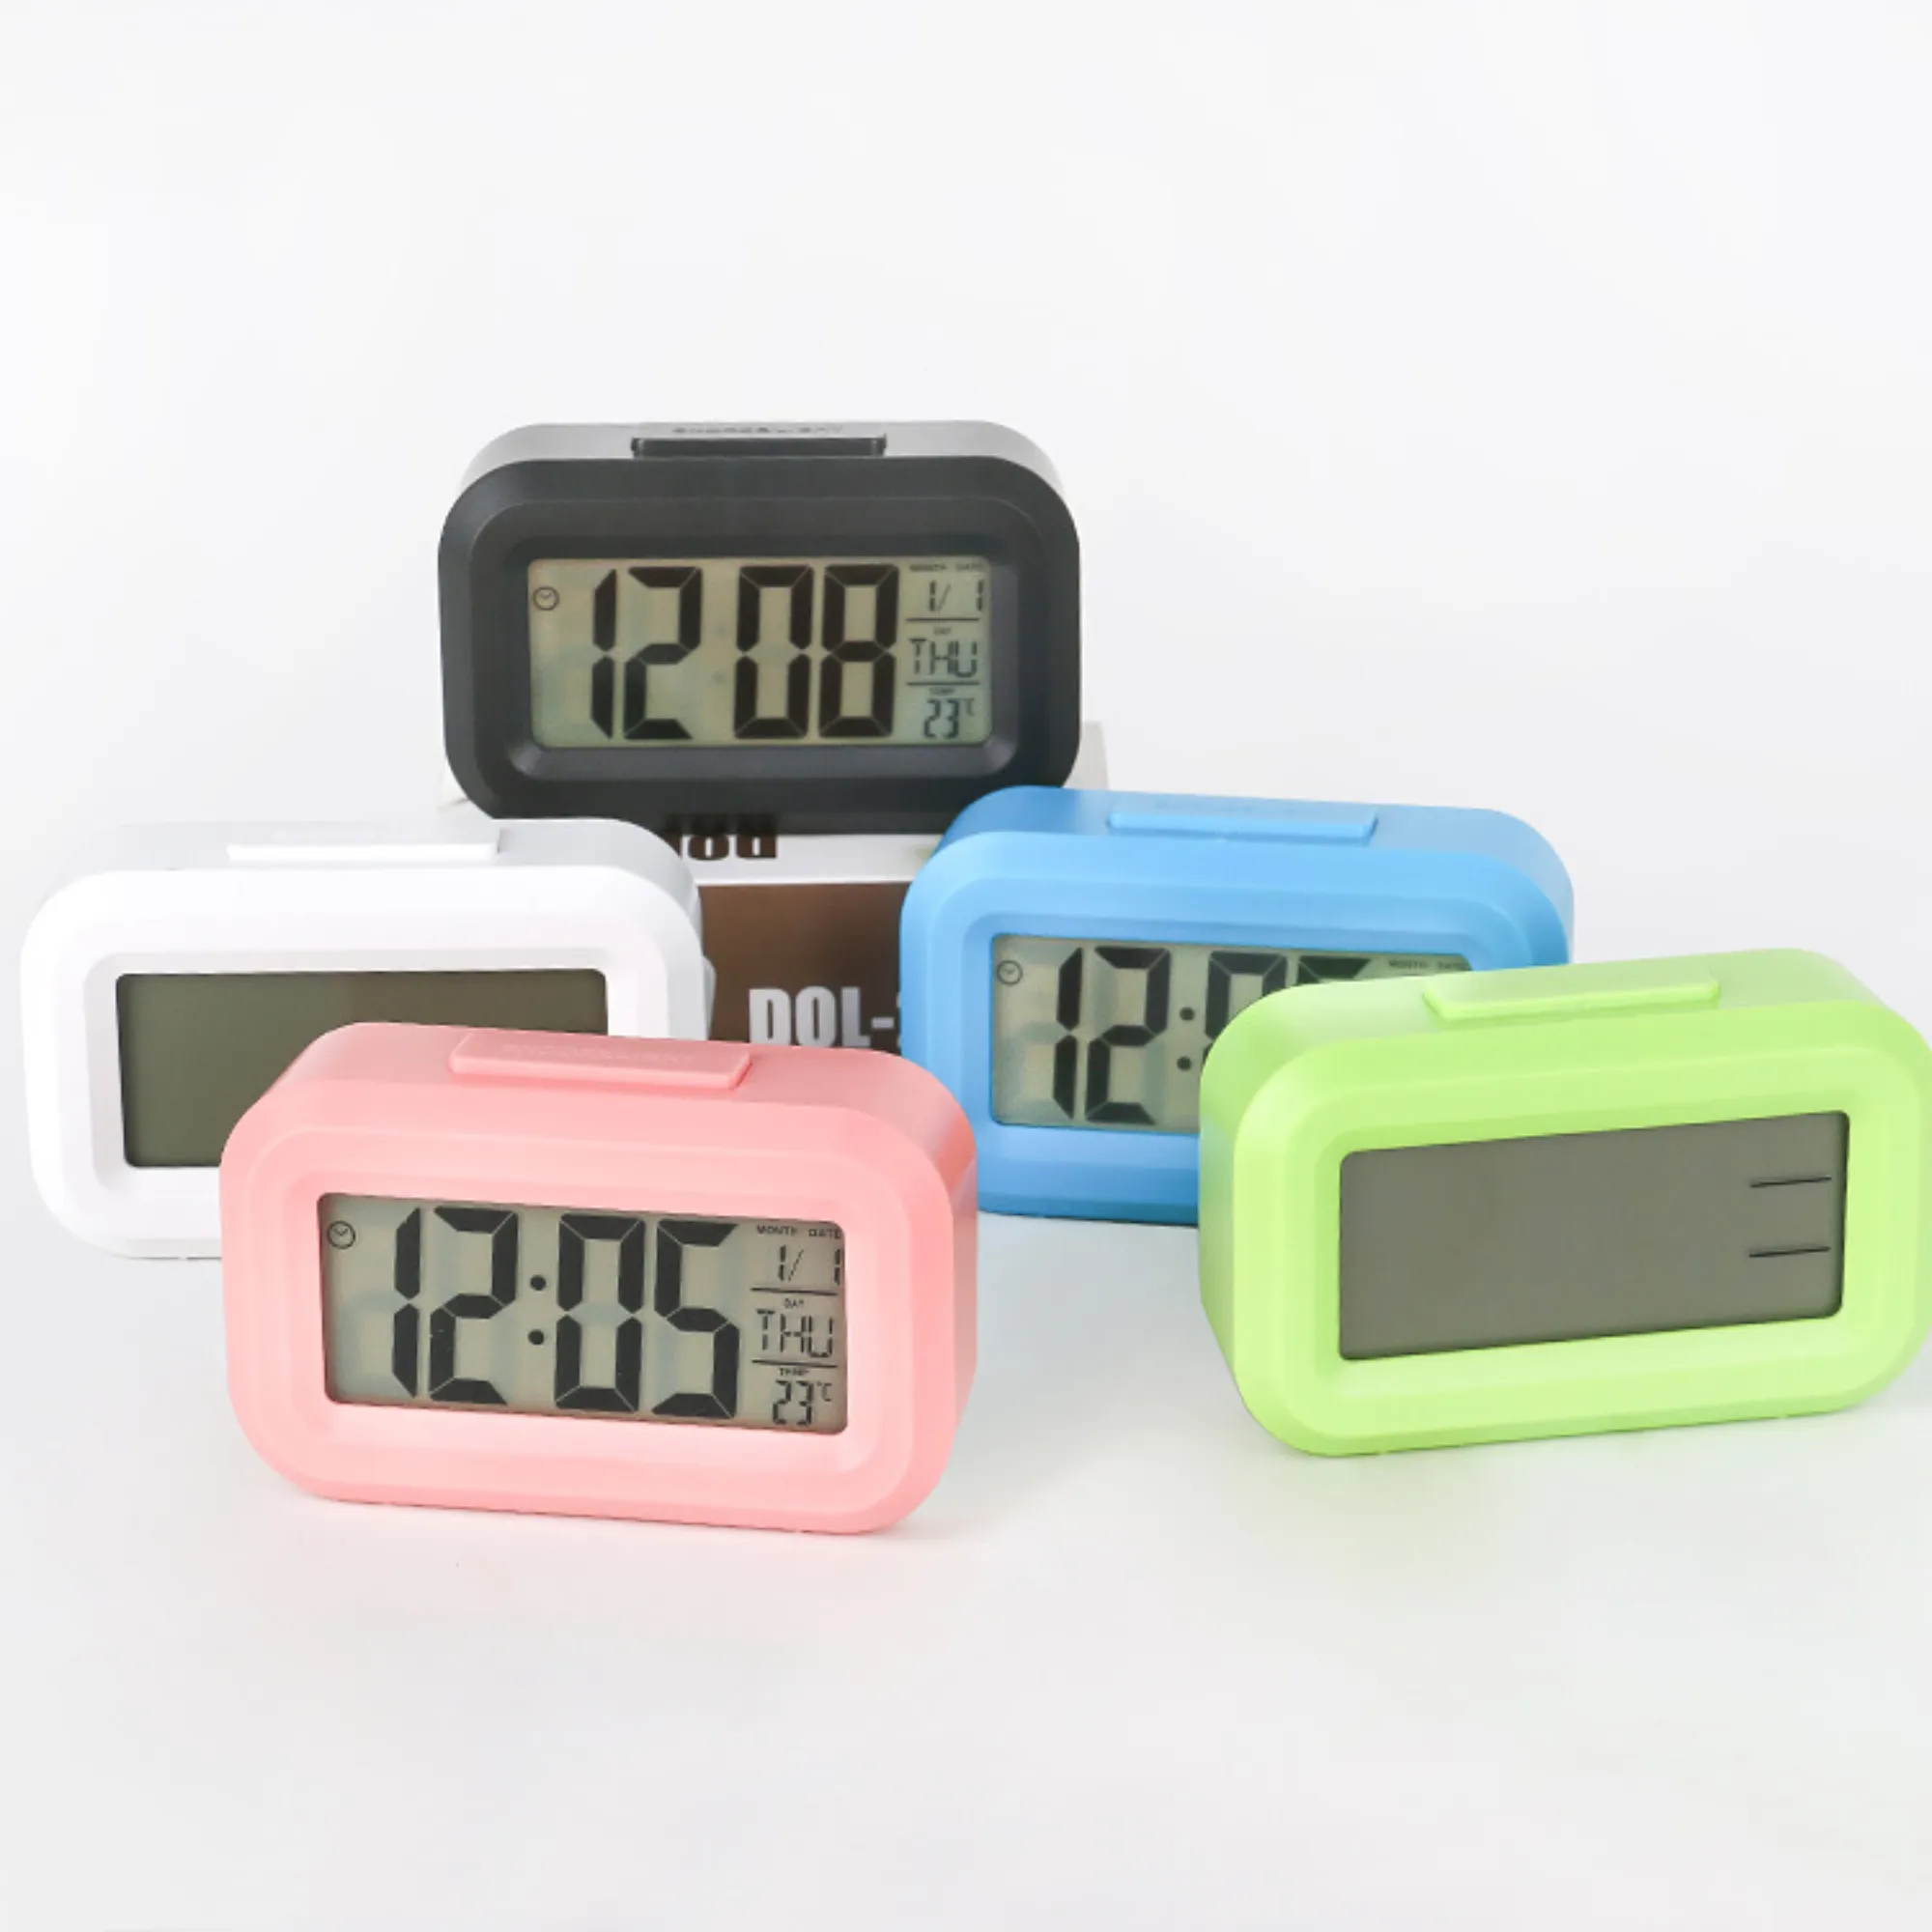 Table de bureau numérique Lcd horloge alarme système 12/24 heures Mini bureau à domicile étudiants veilleuse horloge avec température